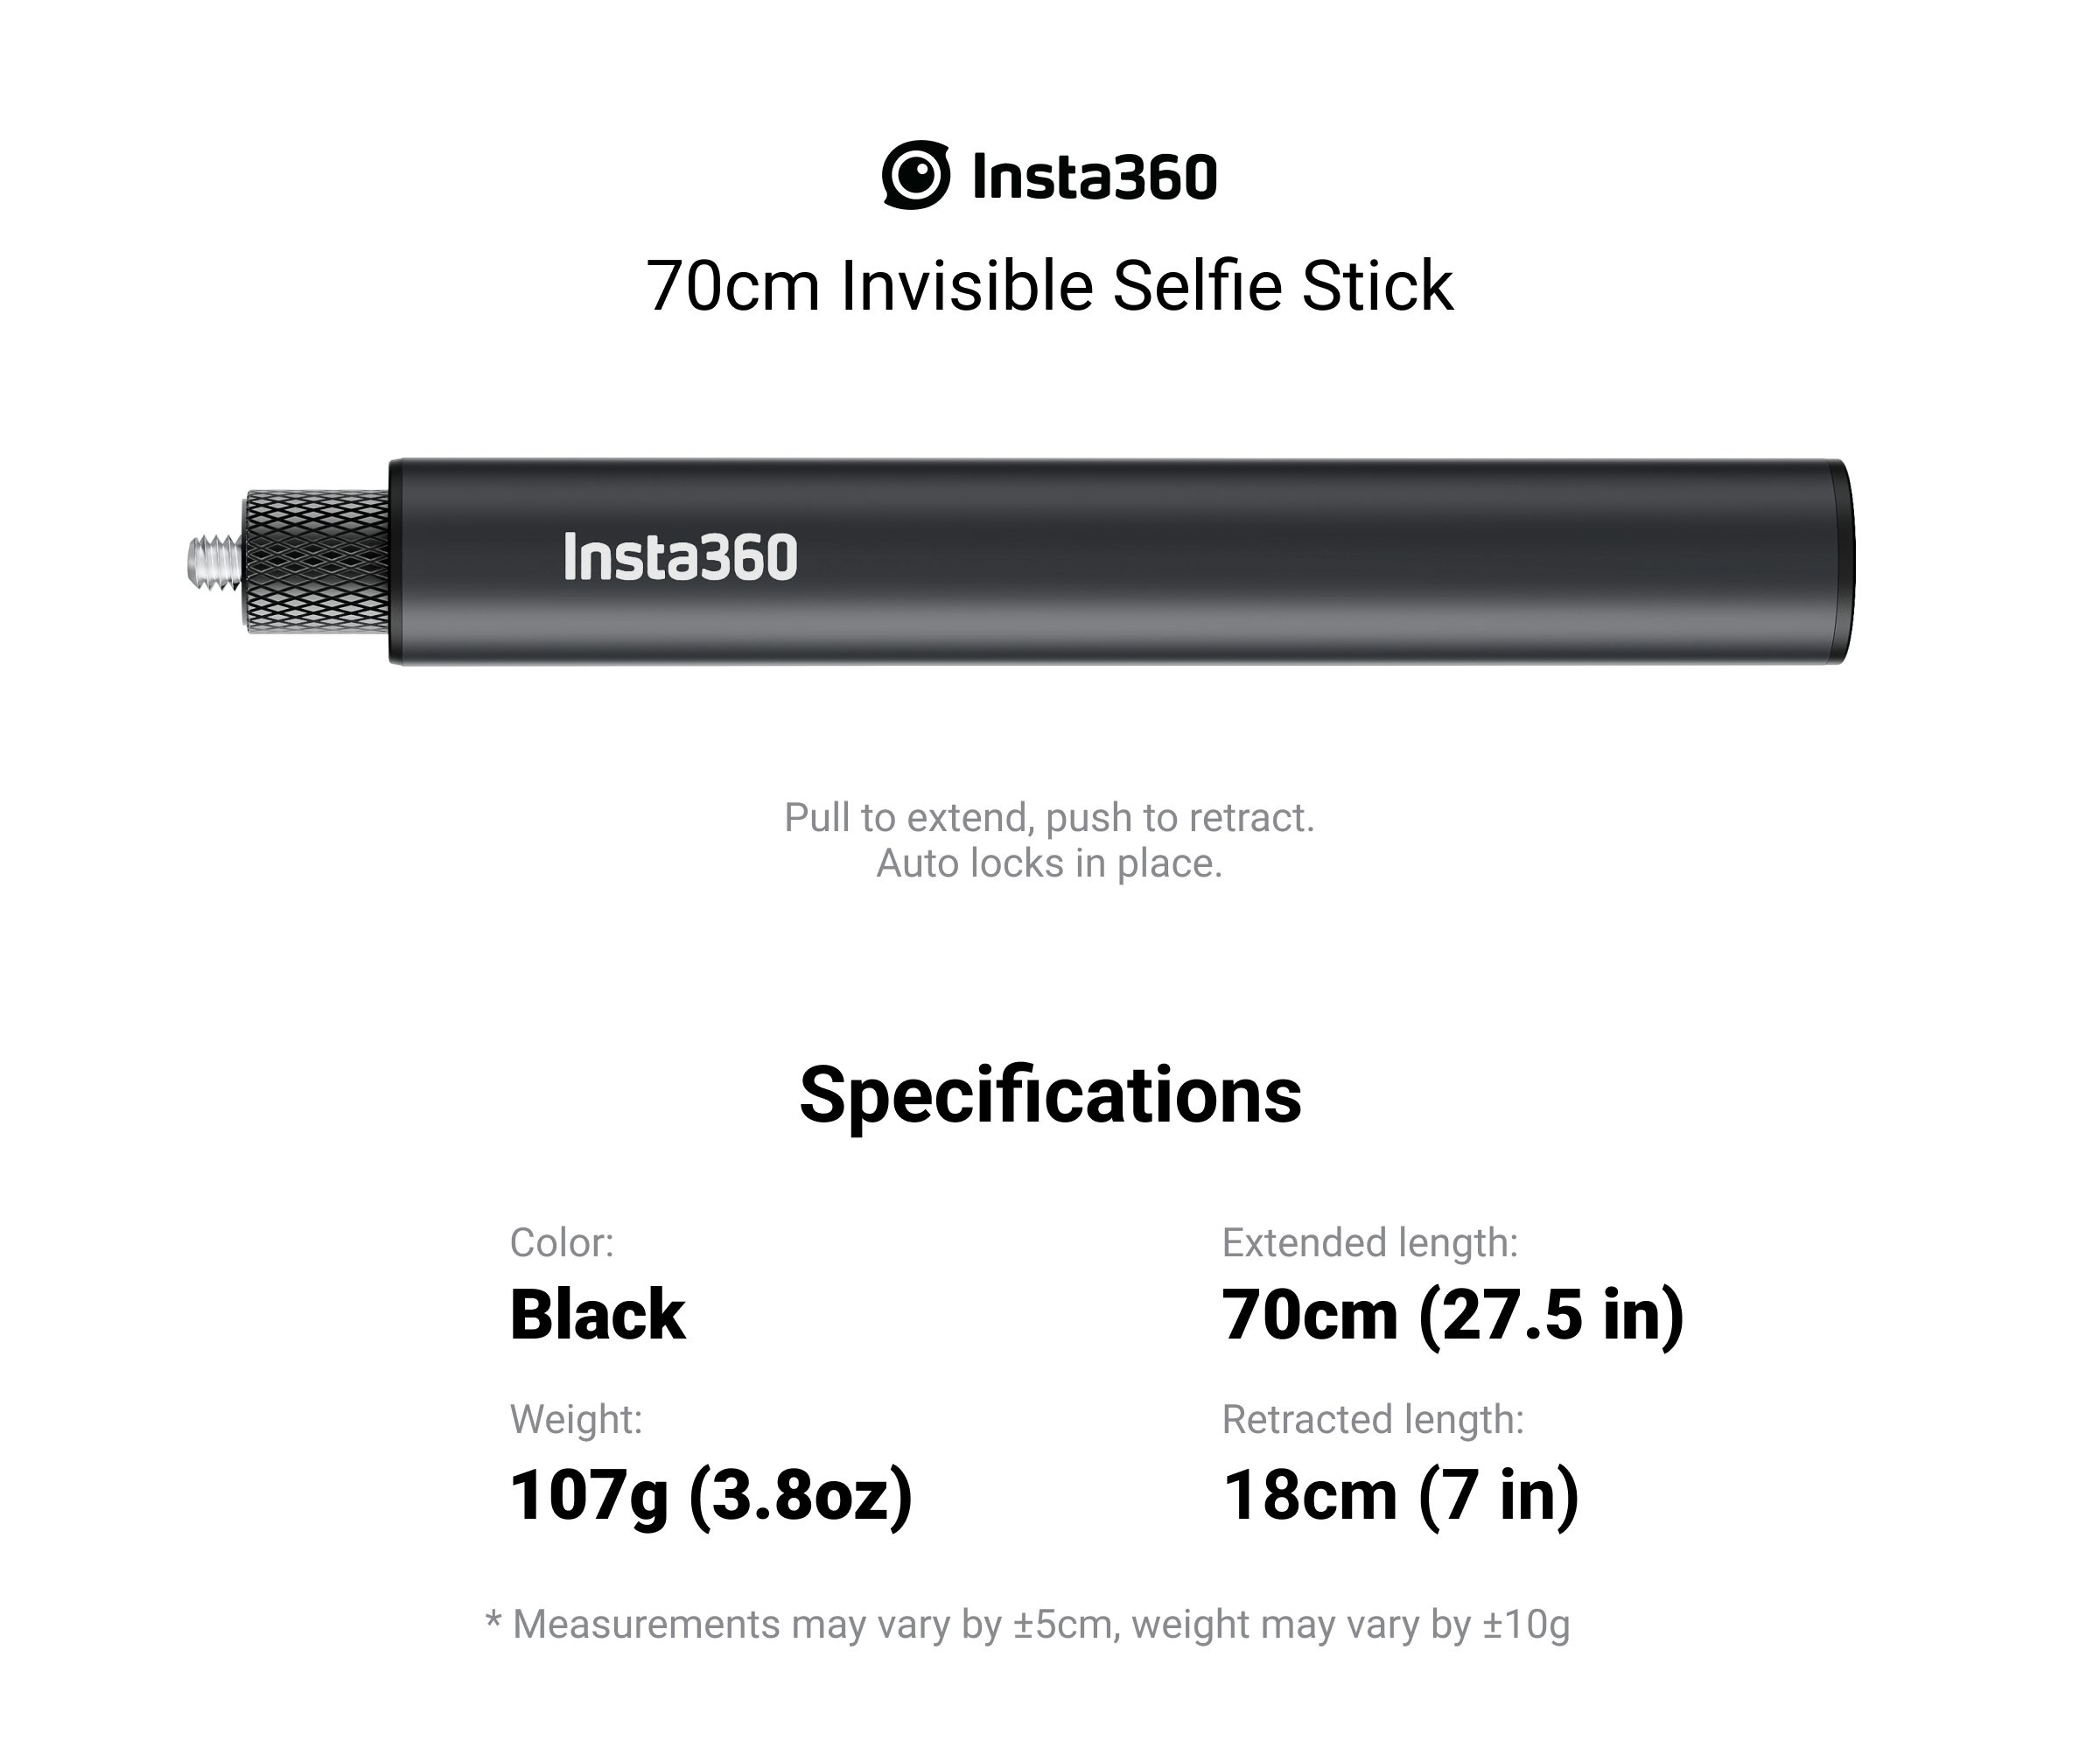 Insta360 70cm invisible selfie stick